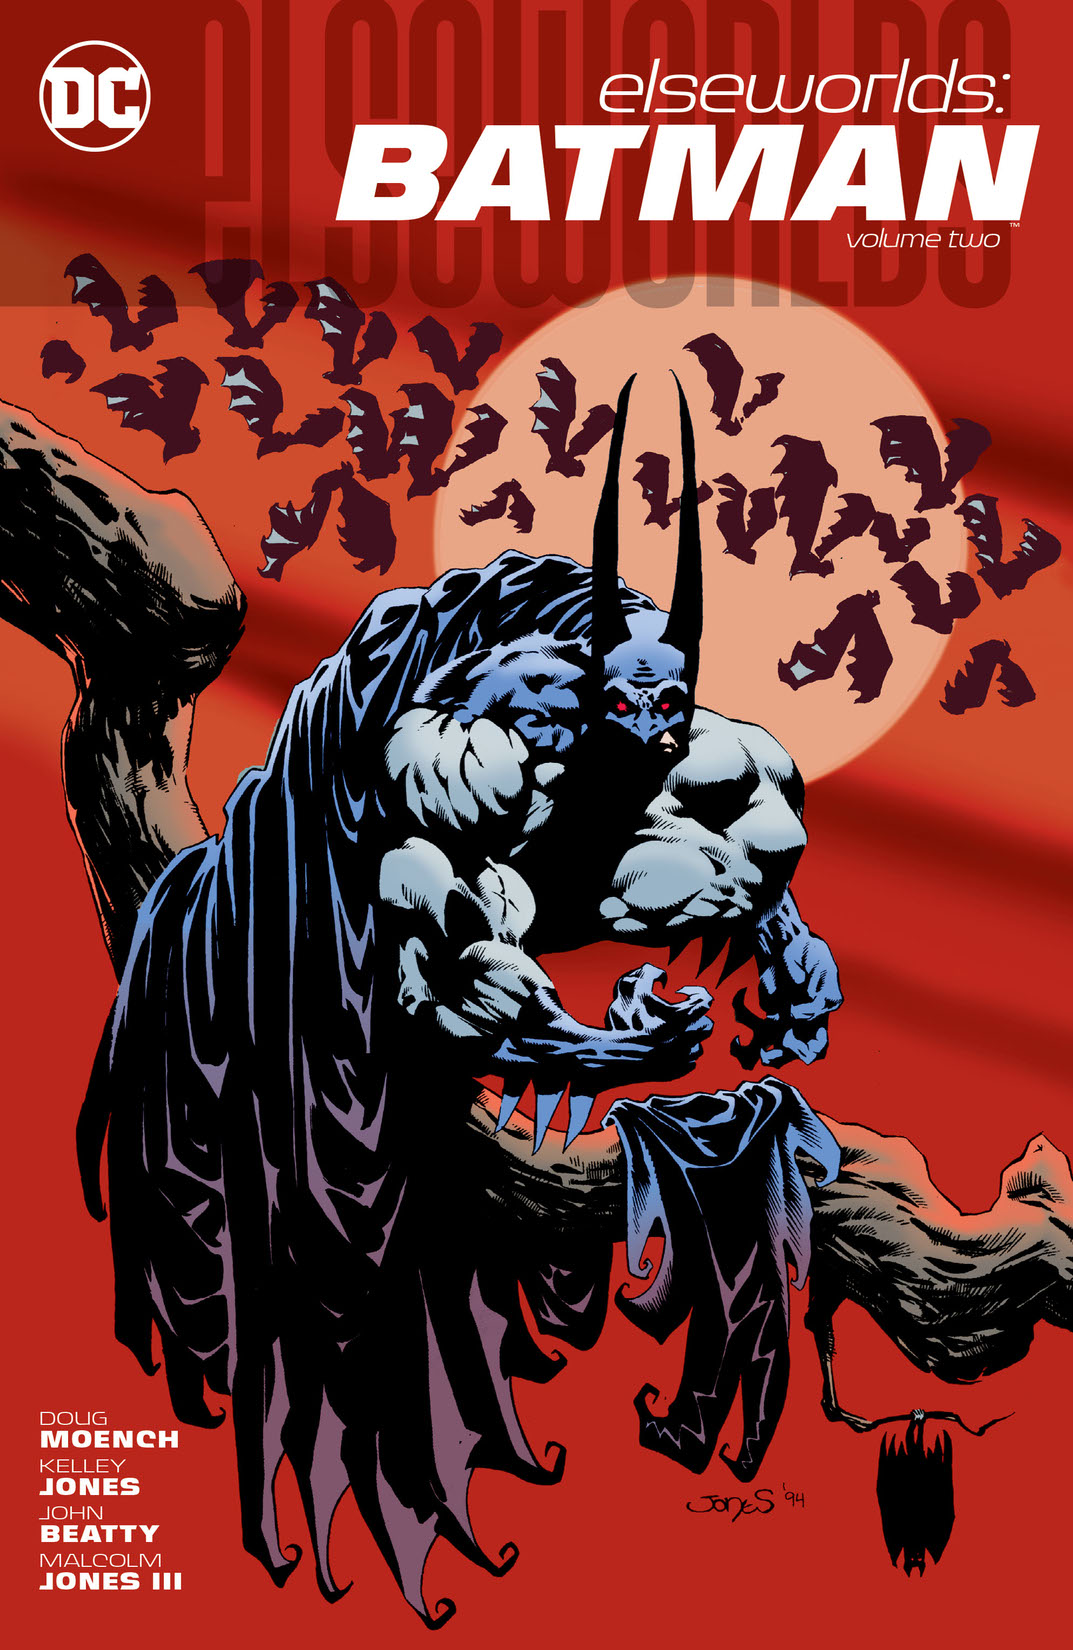 Elseworlds: Batman Vol. 2 preview images